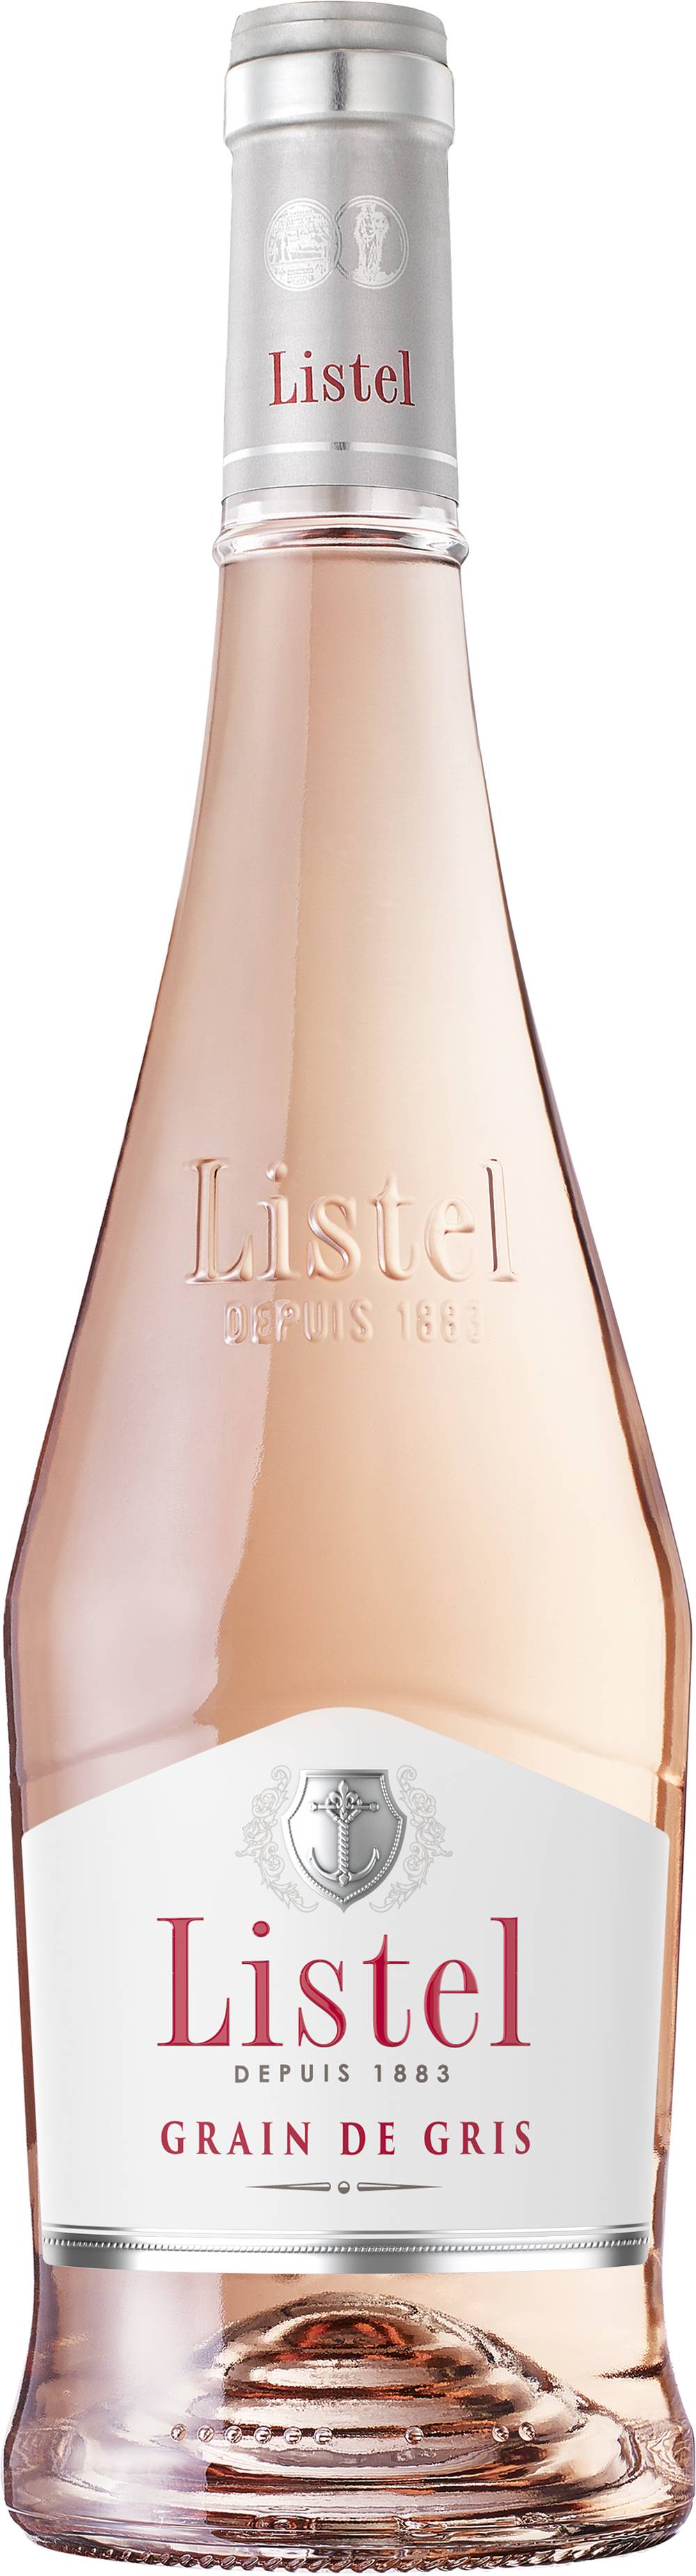 Listel - Grain de gris vin rosé (750 ml)